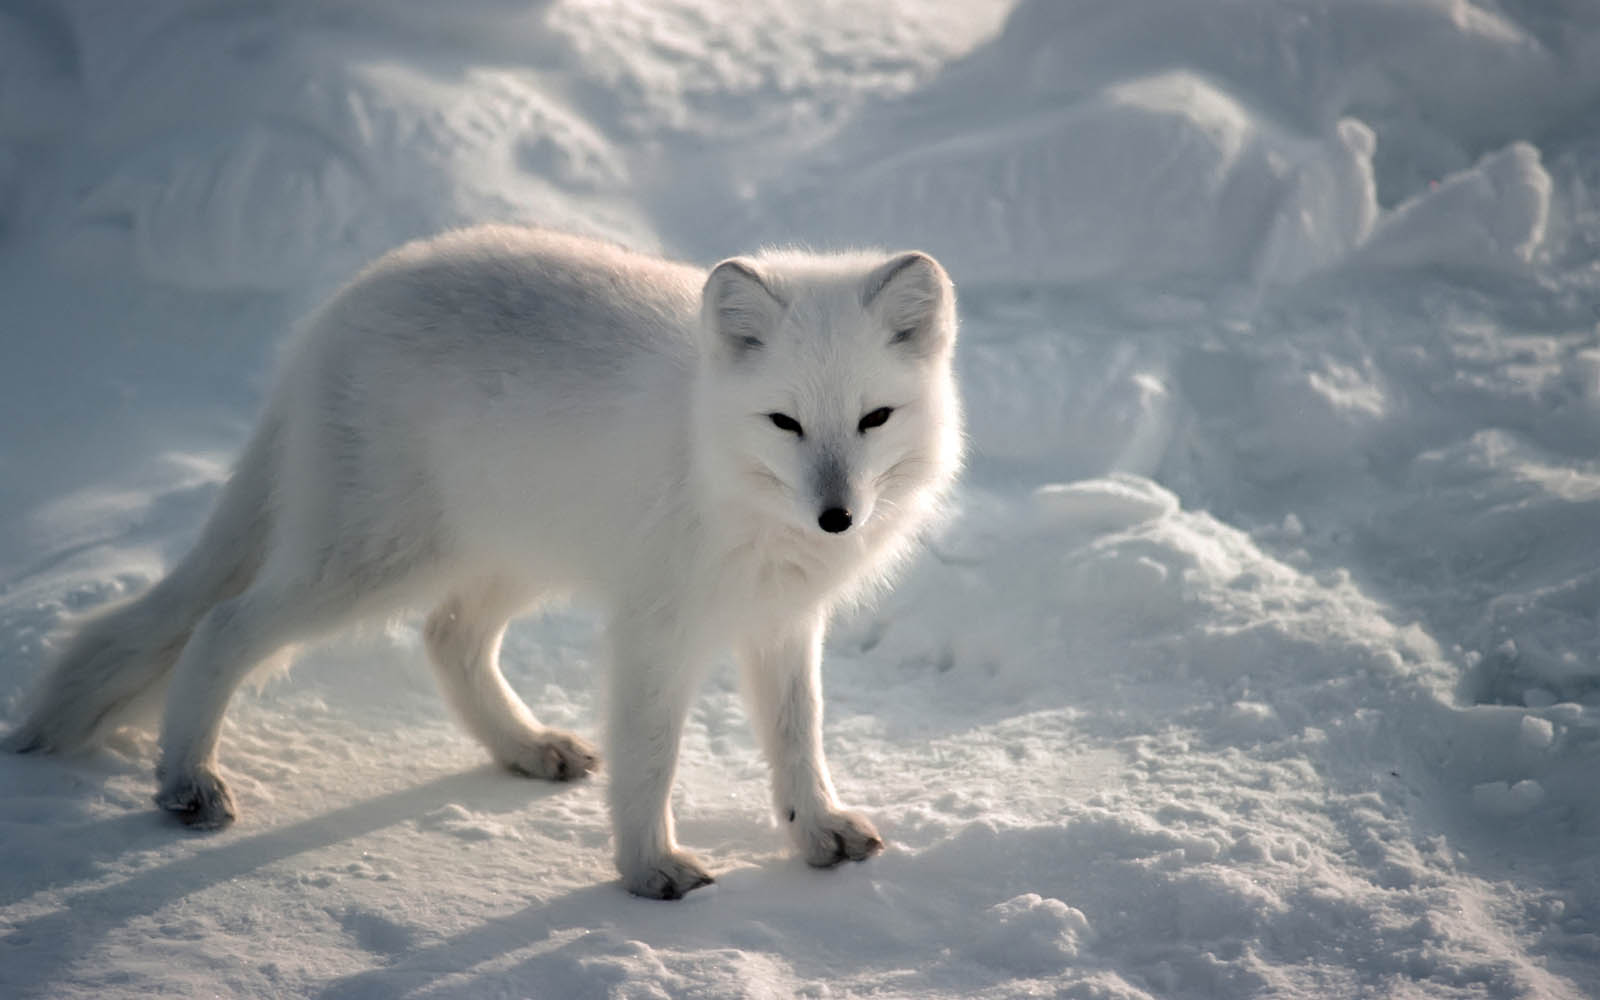  arctic fox wallpapers arctic fox desktop wallpapers arctic fox